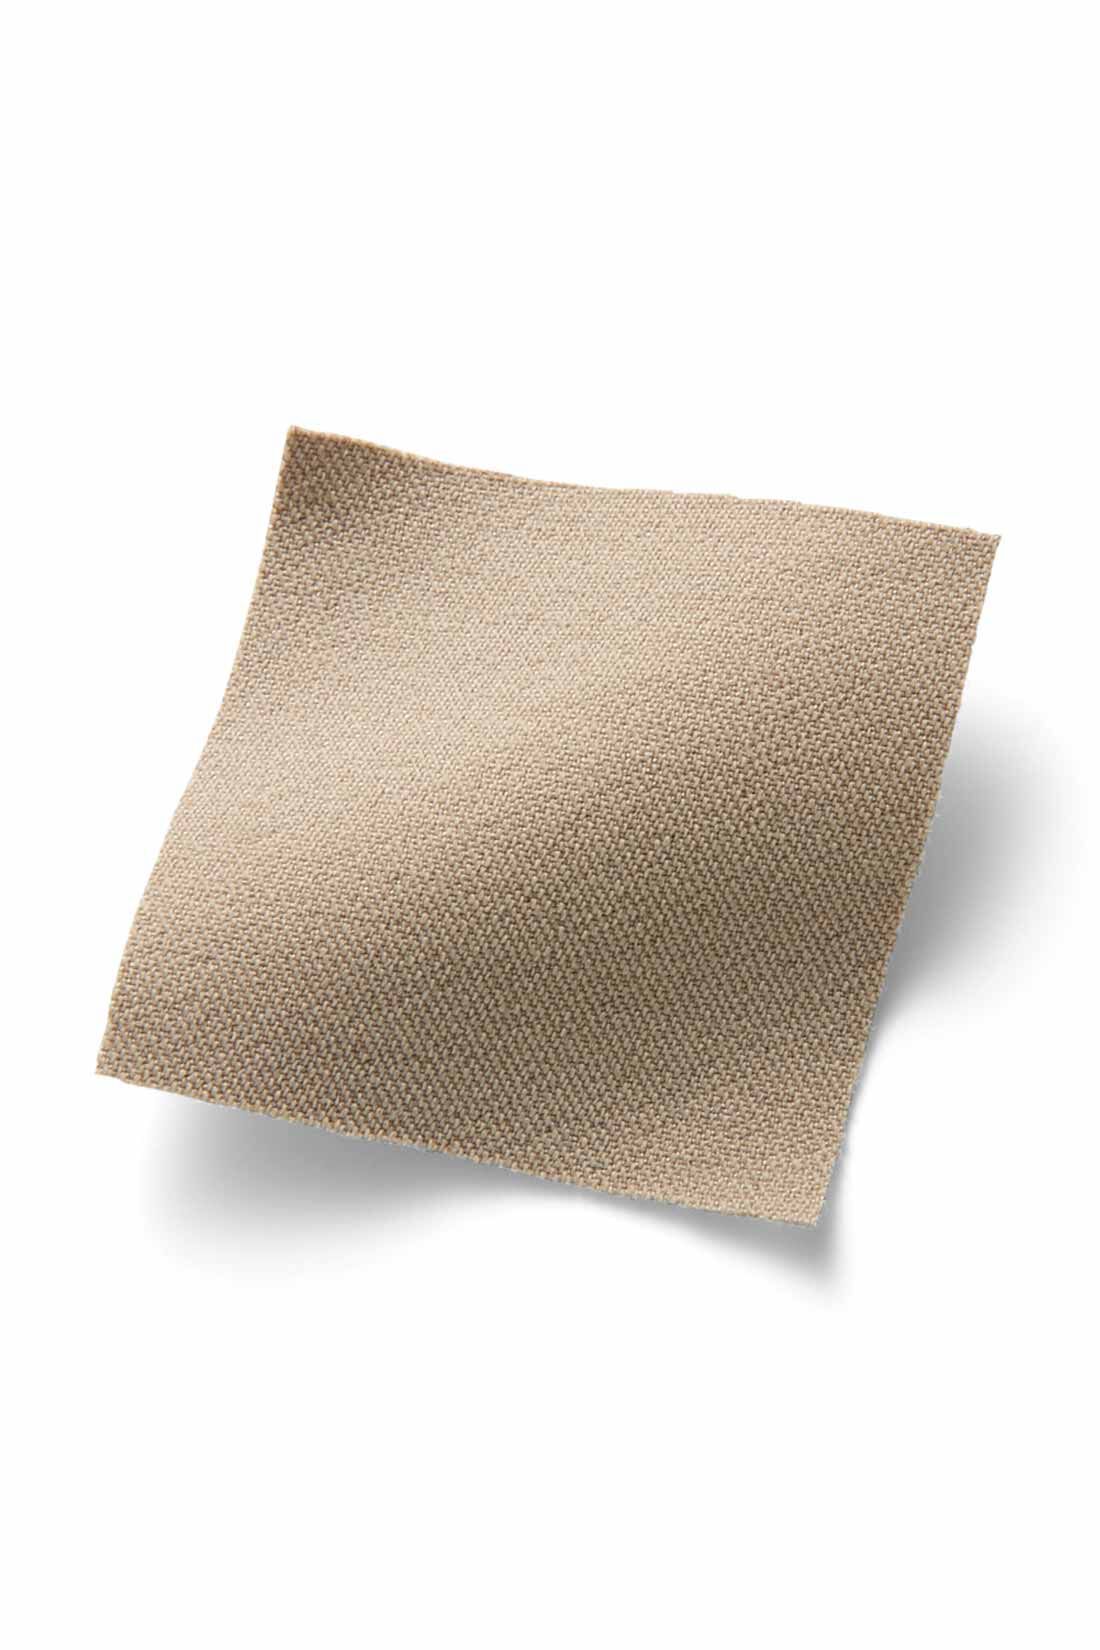 IEDIT[イディット]　ぐいっとしなやか すらりと美脚！ ストレッチ布はく素材のエアノビワイドパンツ〈ネイビー〉|ストレッチ素材ながら綿のようなマットな表面感が品よくきれい。脚のラインを拾いにくい厚みと張り感で高見えします。